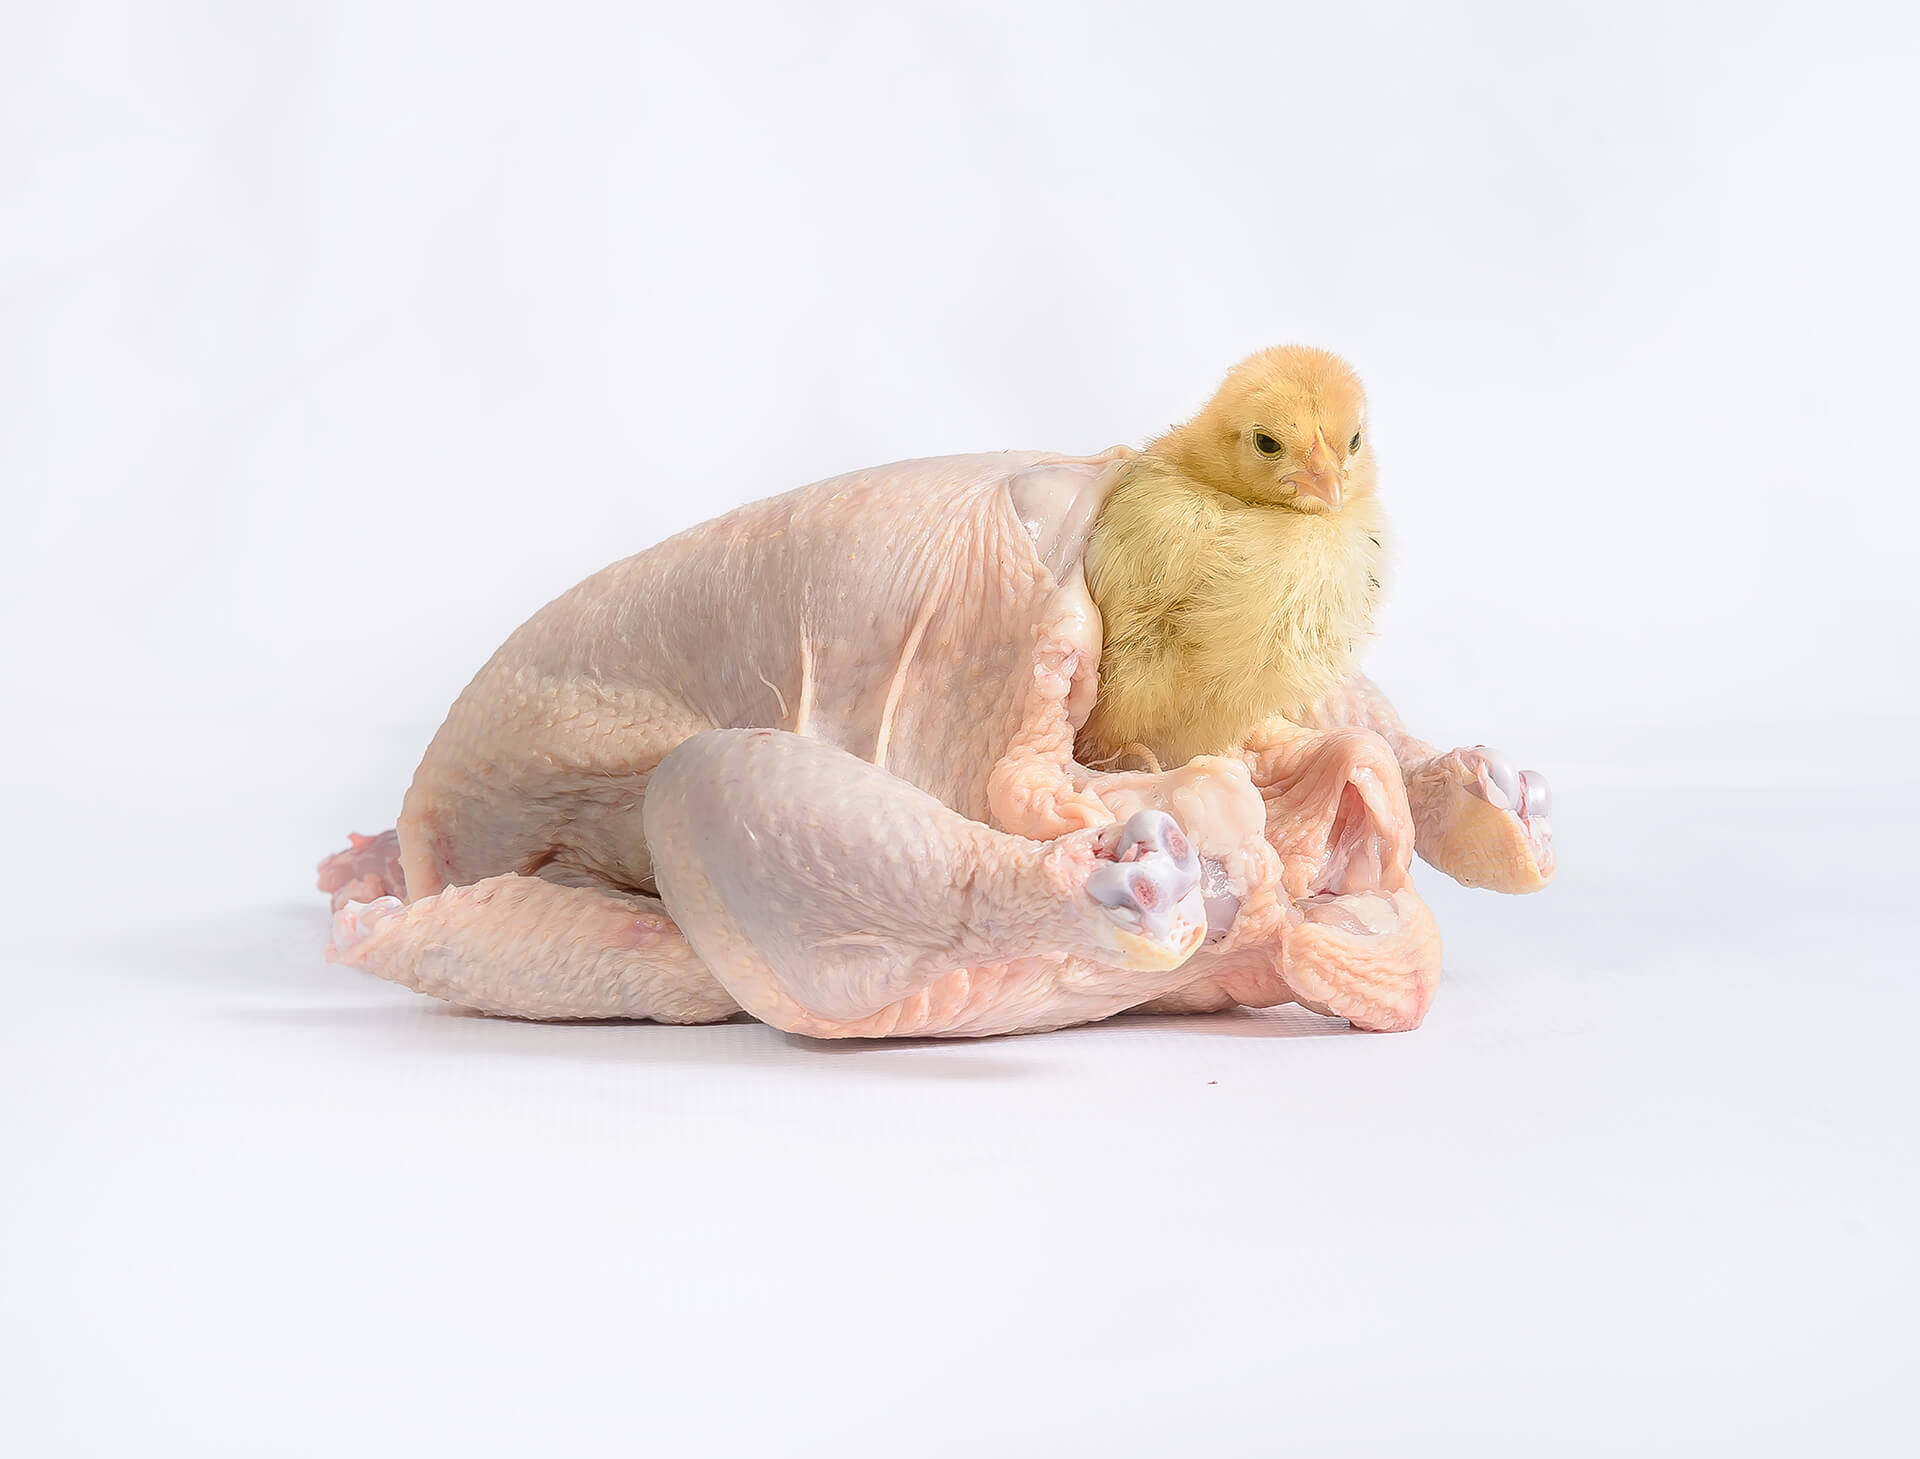 Younes Atbane, "The second copy of the original copy", photographie d'un poussin qui sort d'une d'un poulet mort et déplumé, arts contemporains au Maroc